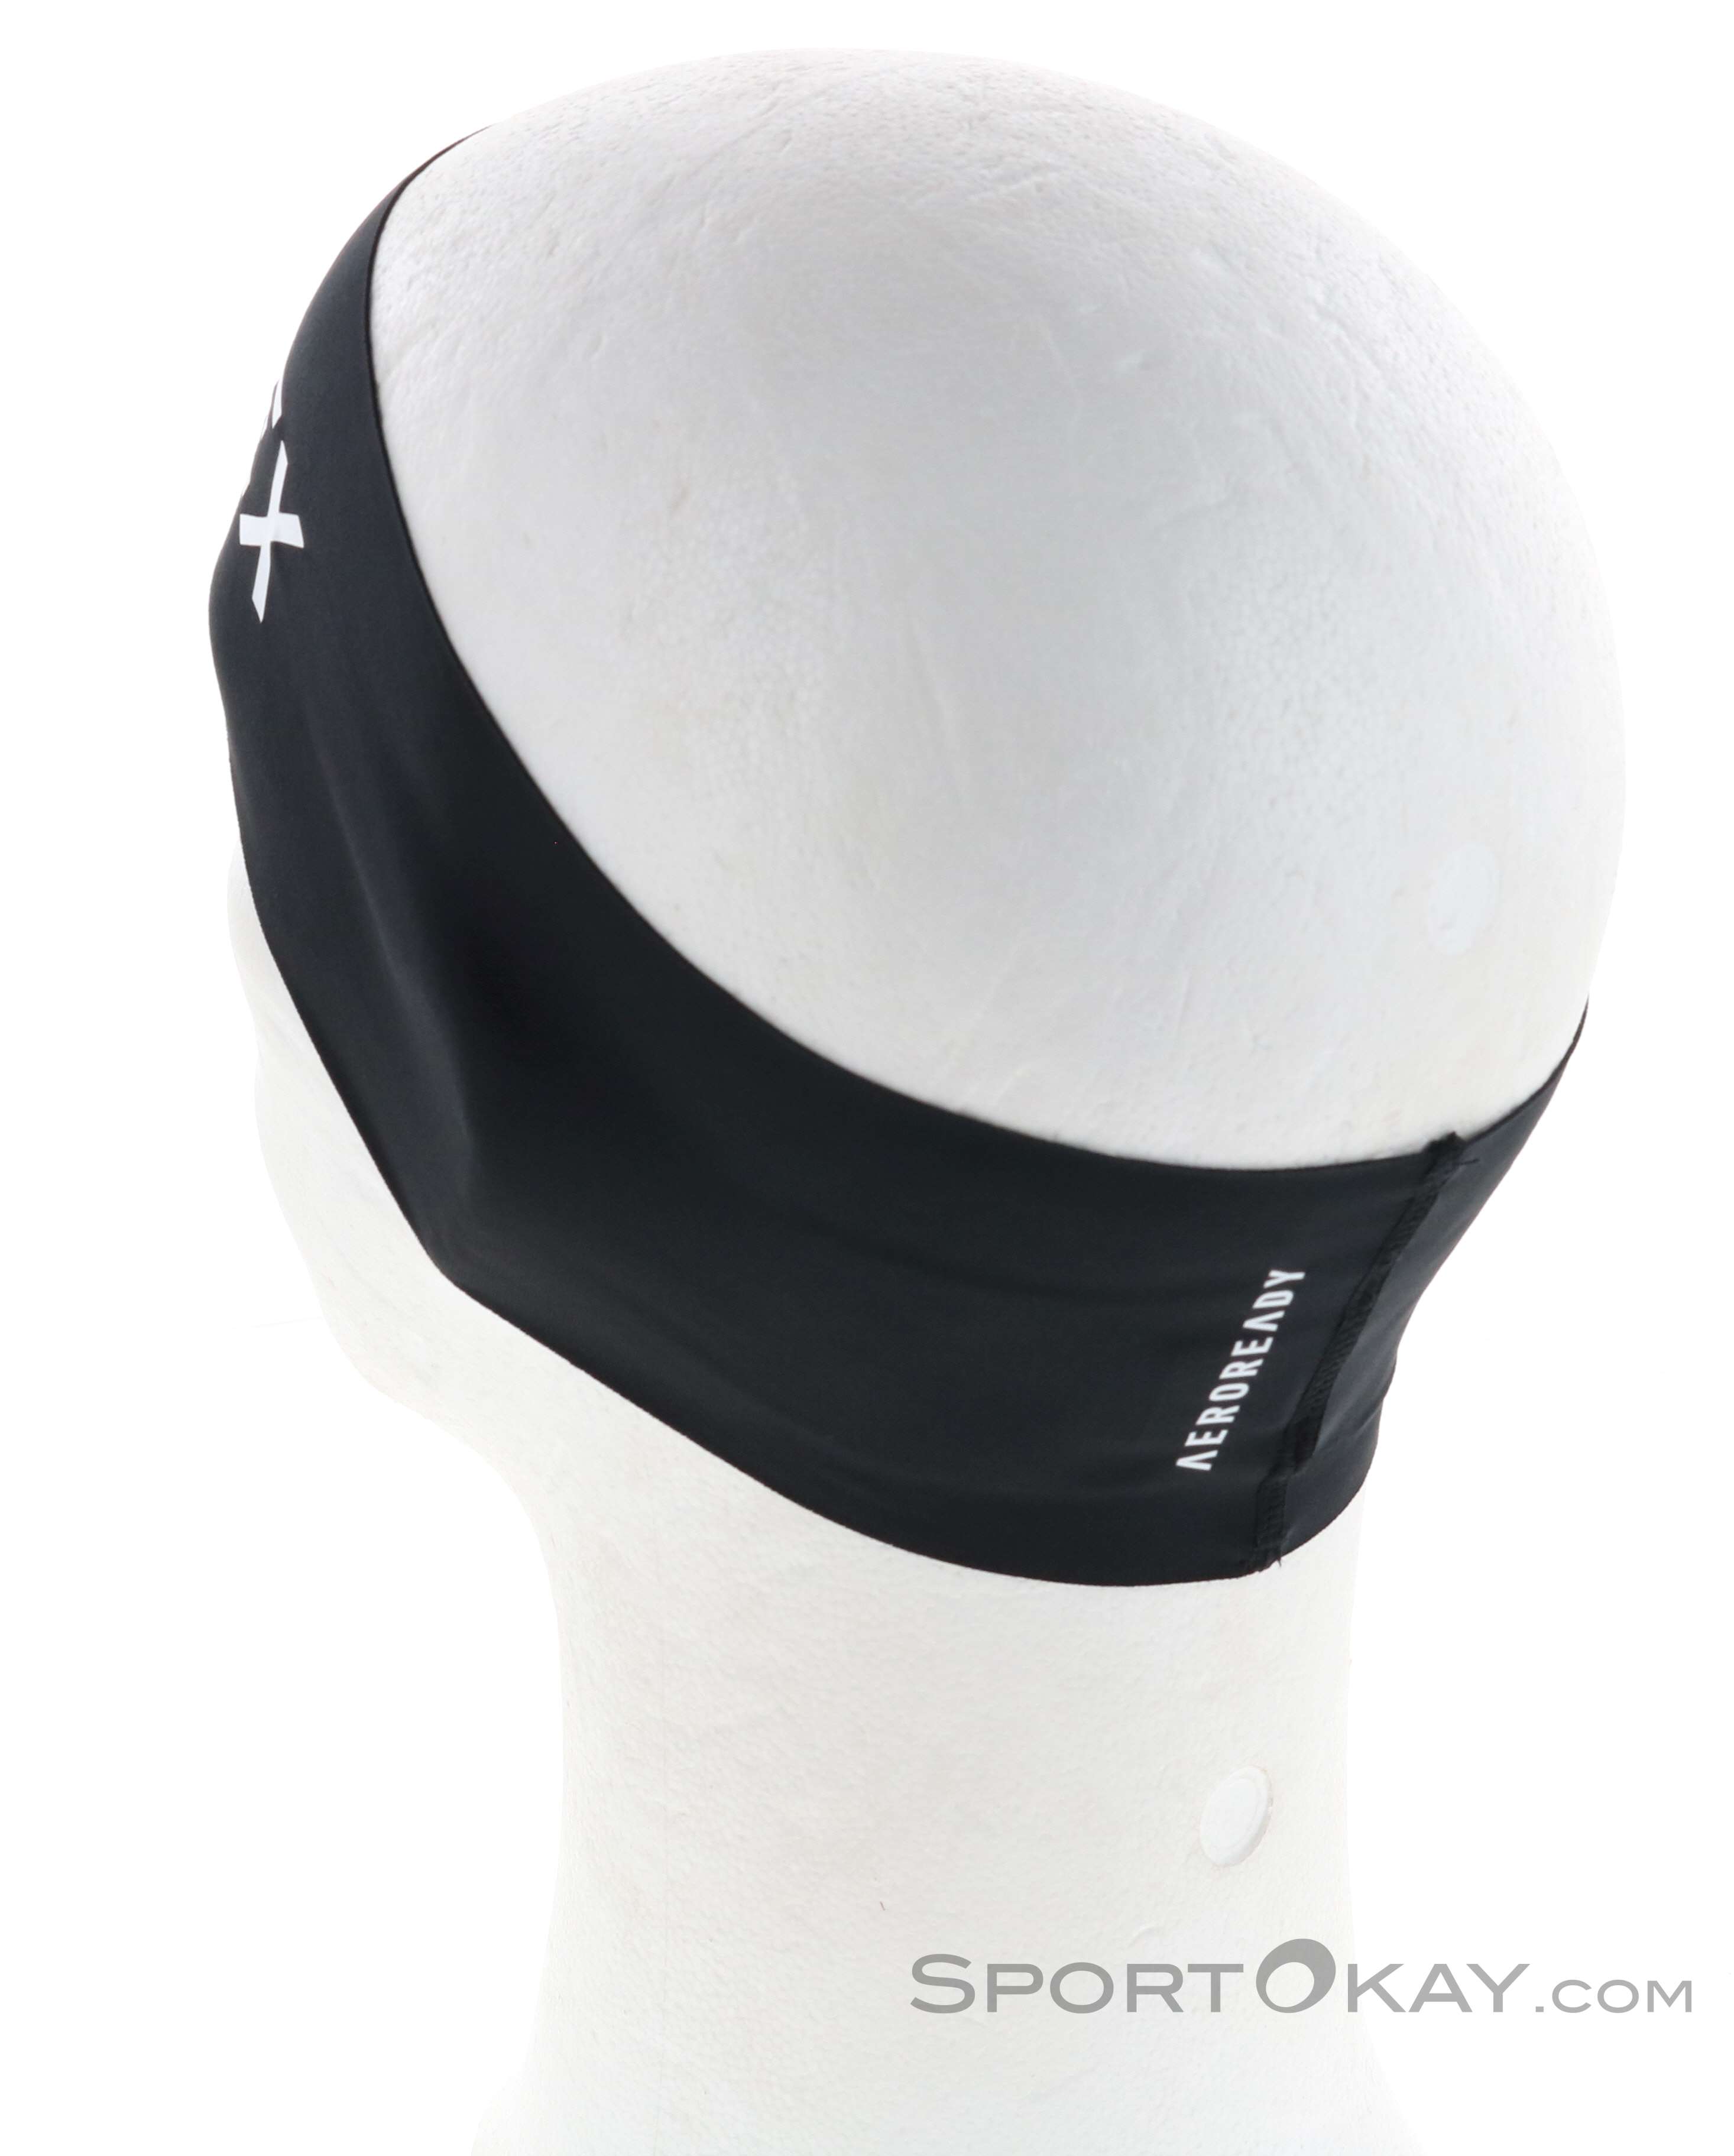 Outdoorbekleidung - Terrex adidas Alle Headband - Outdoor - Stirnband Damen AR - Mützen & Stirnbänder